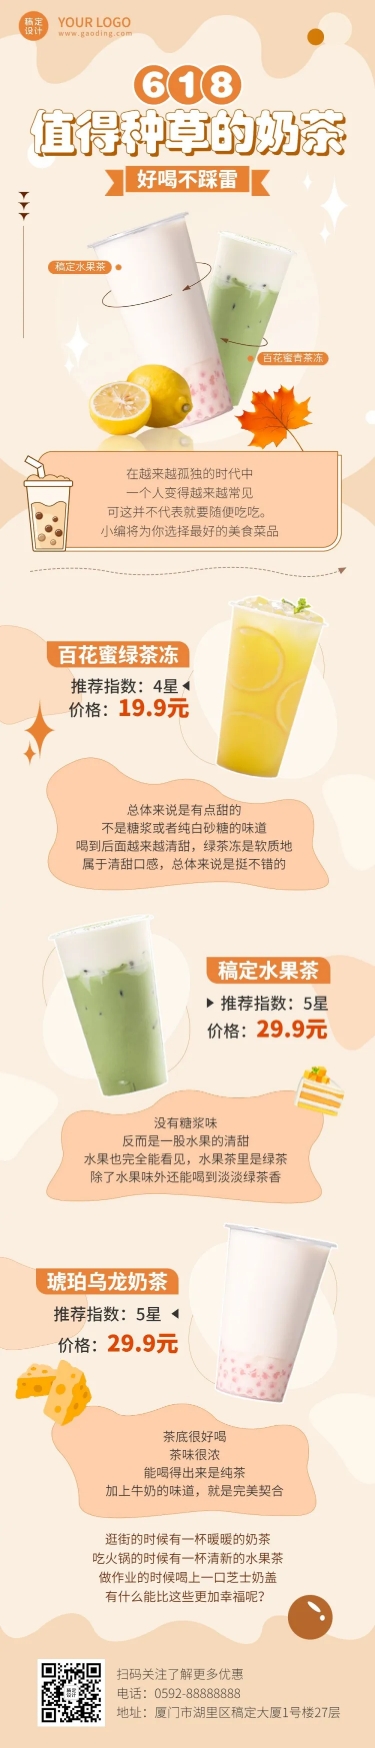 餐饮618奶茶饮品营销文章长图